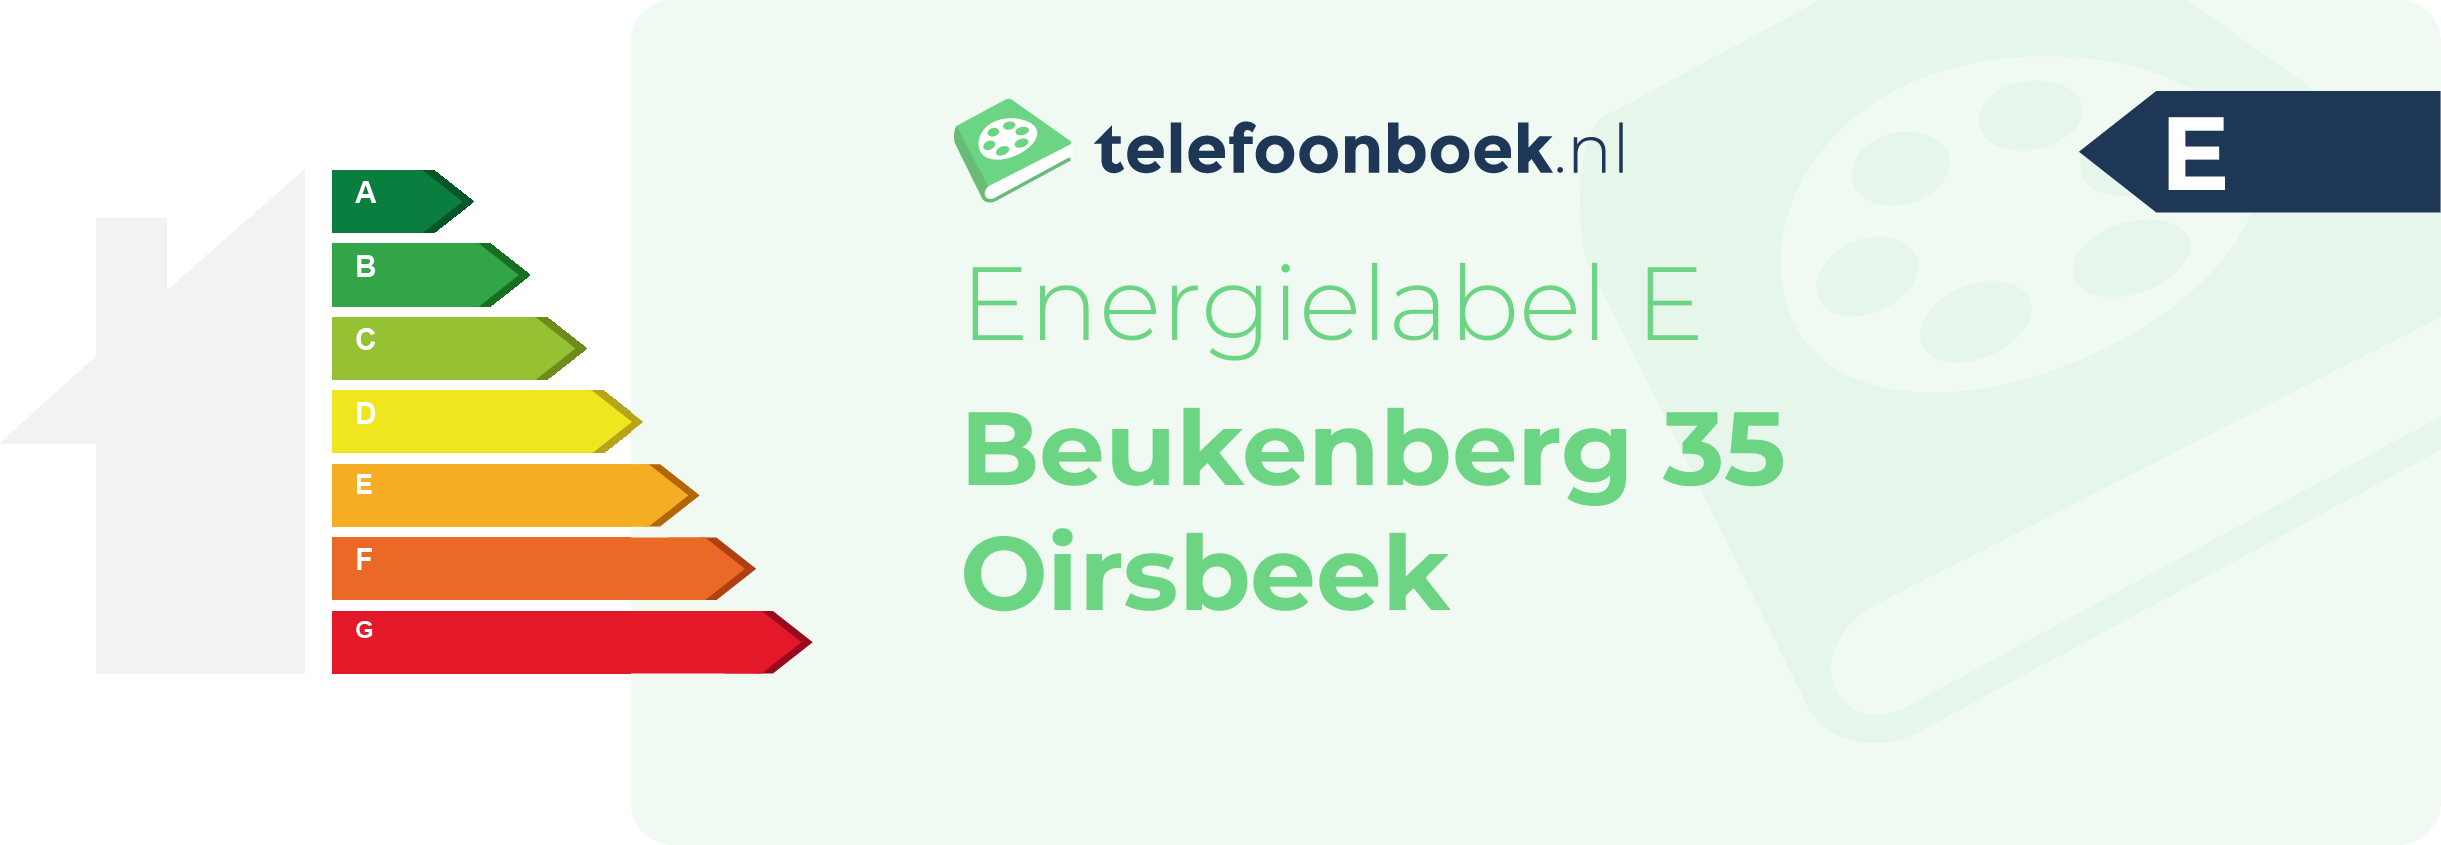 Energielabel Beukenberg 35 Oirsbeek